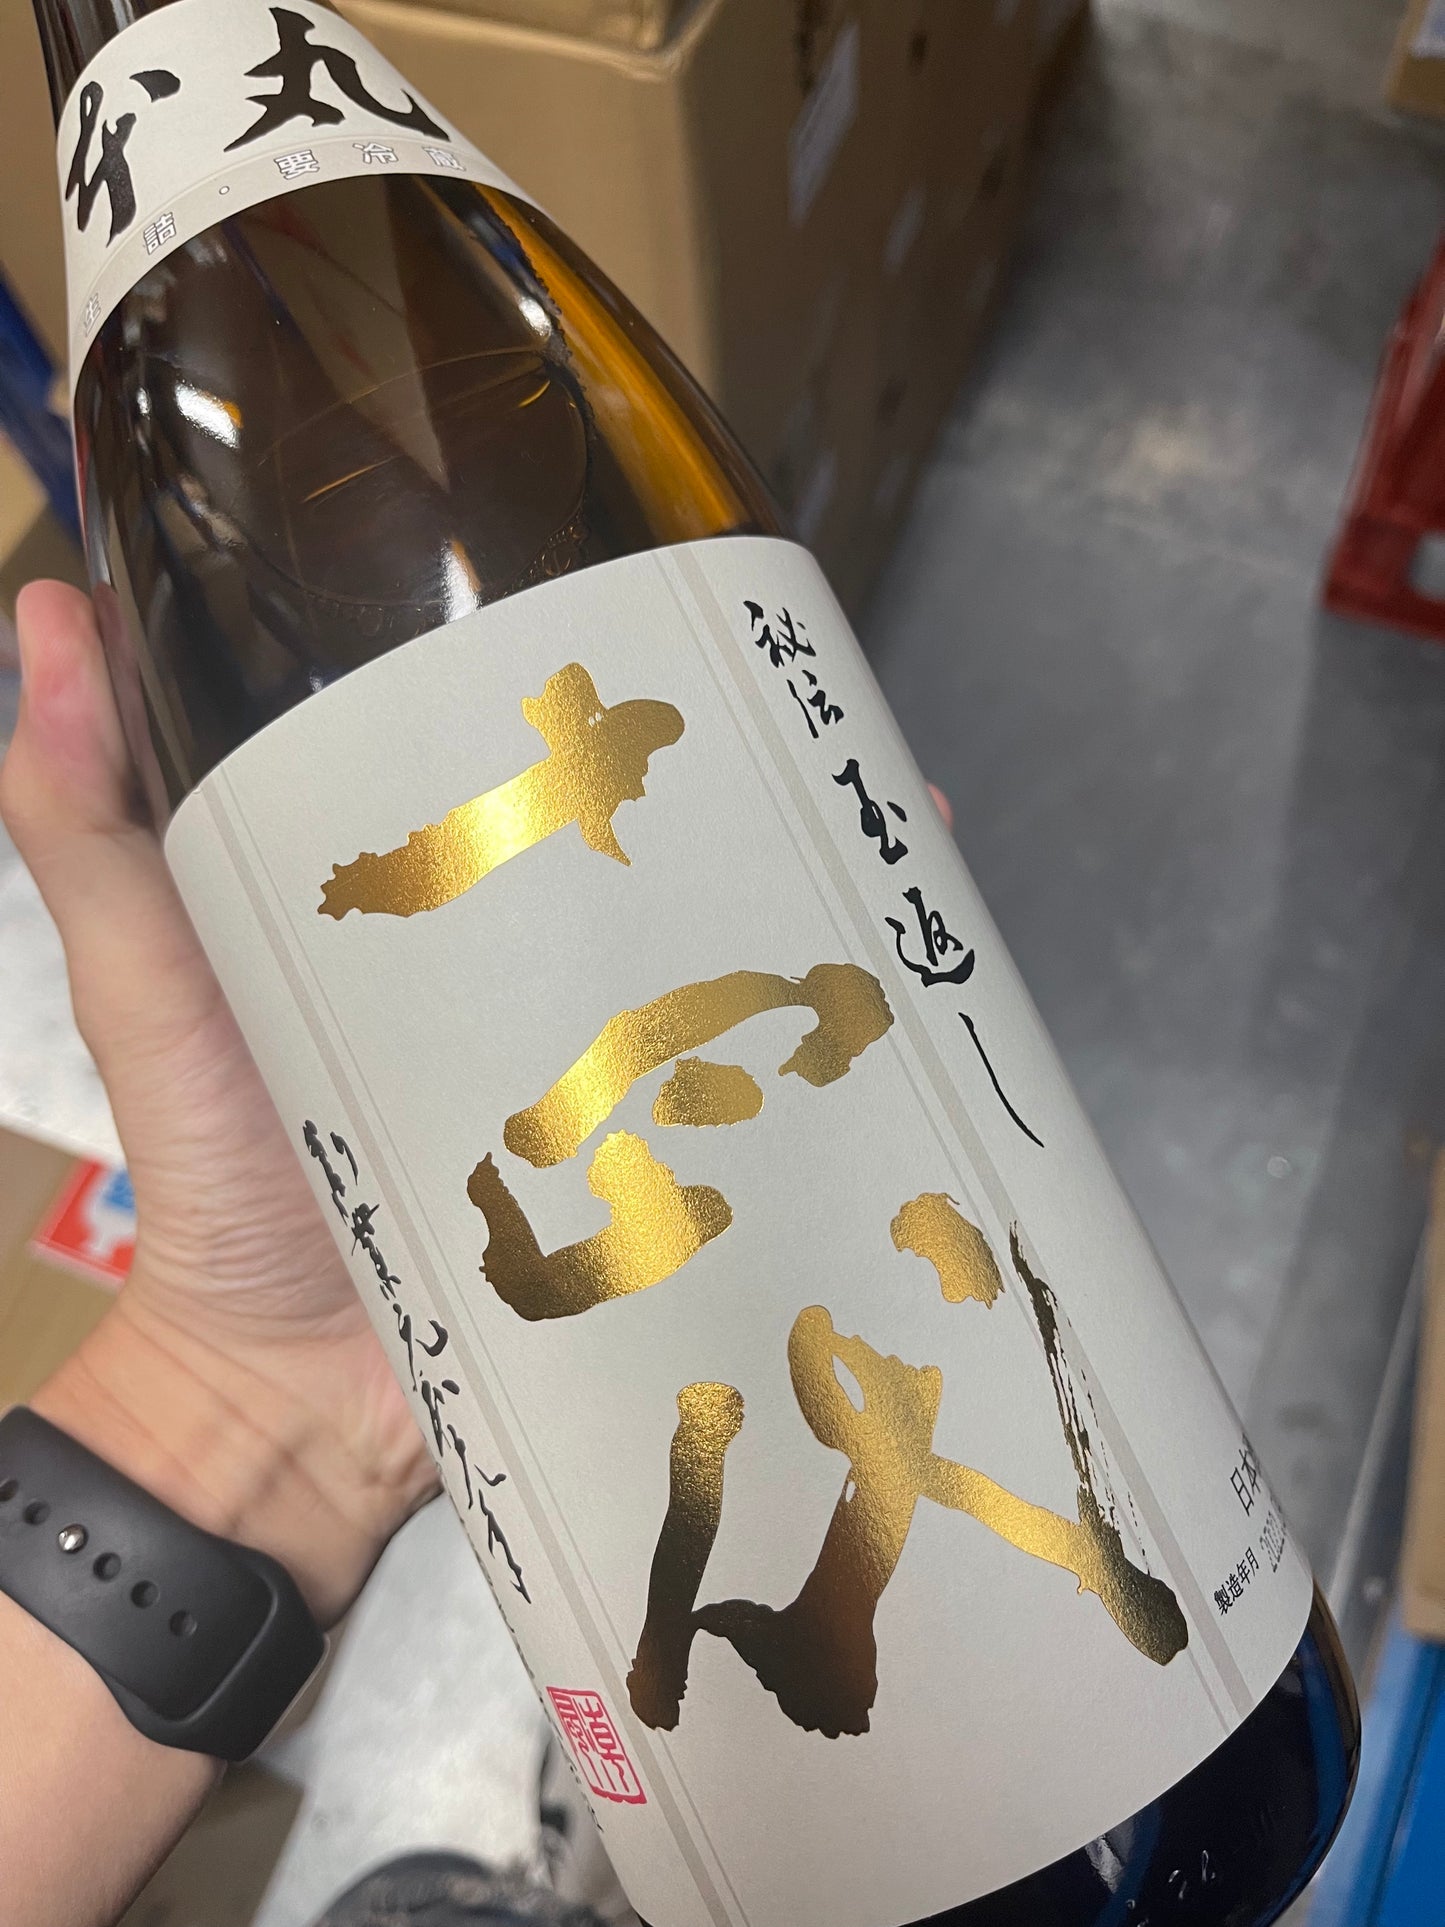 Jushidai Honmaru special brew